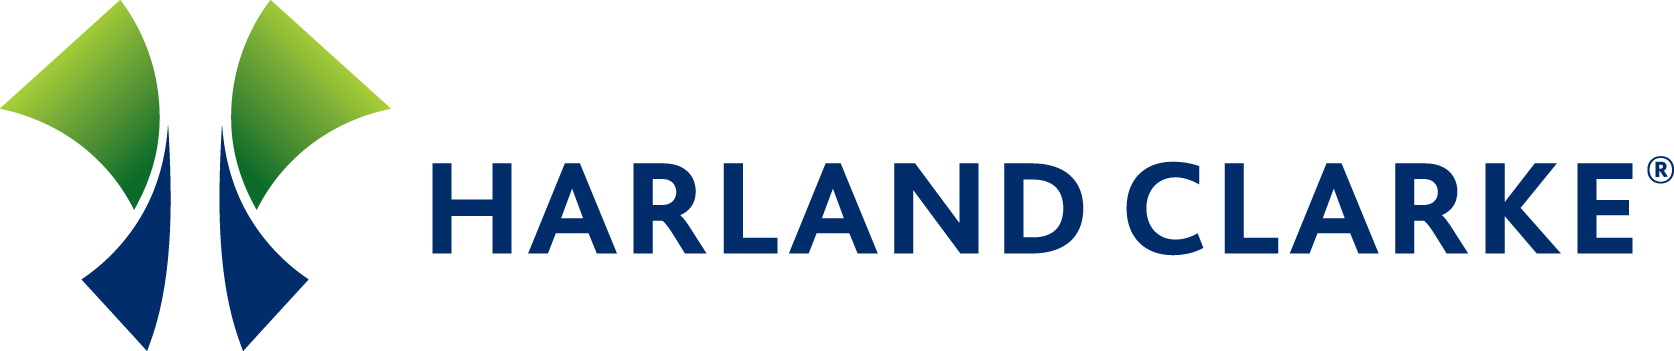 harland_clarke_logo